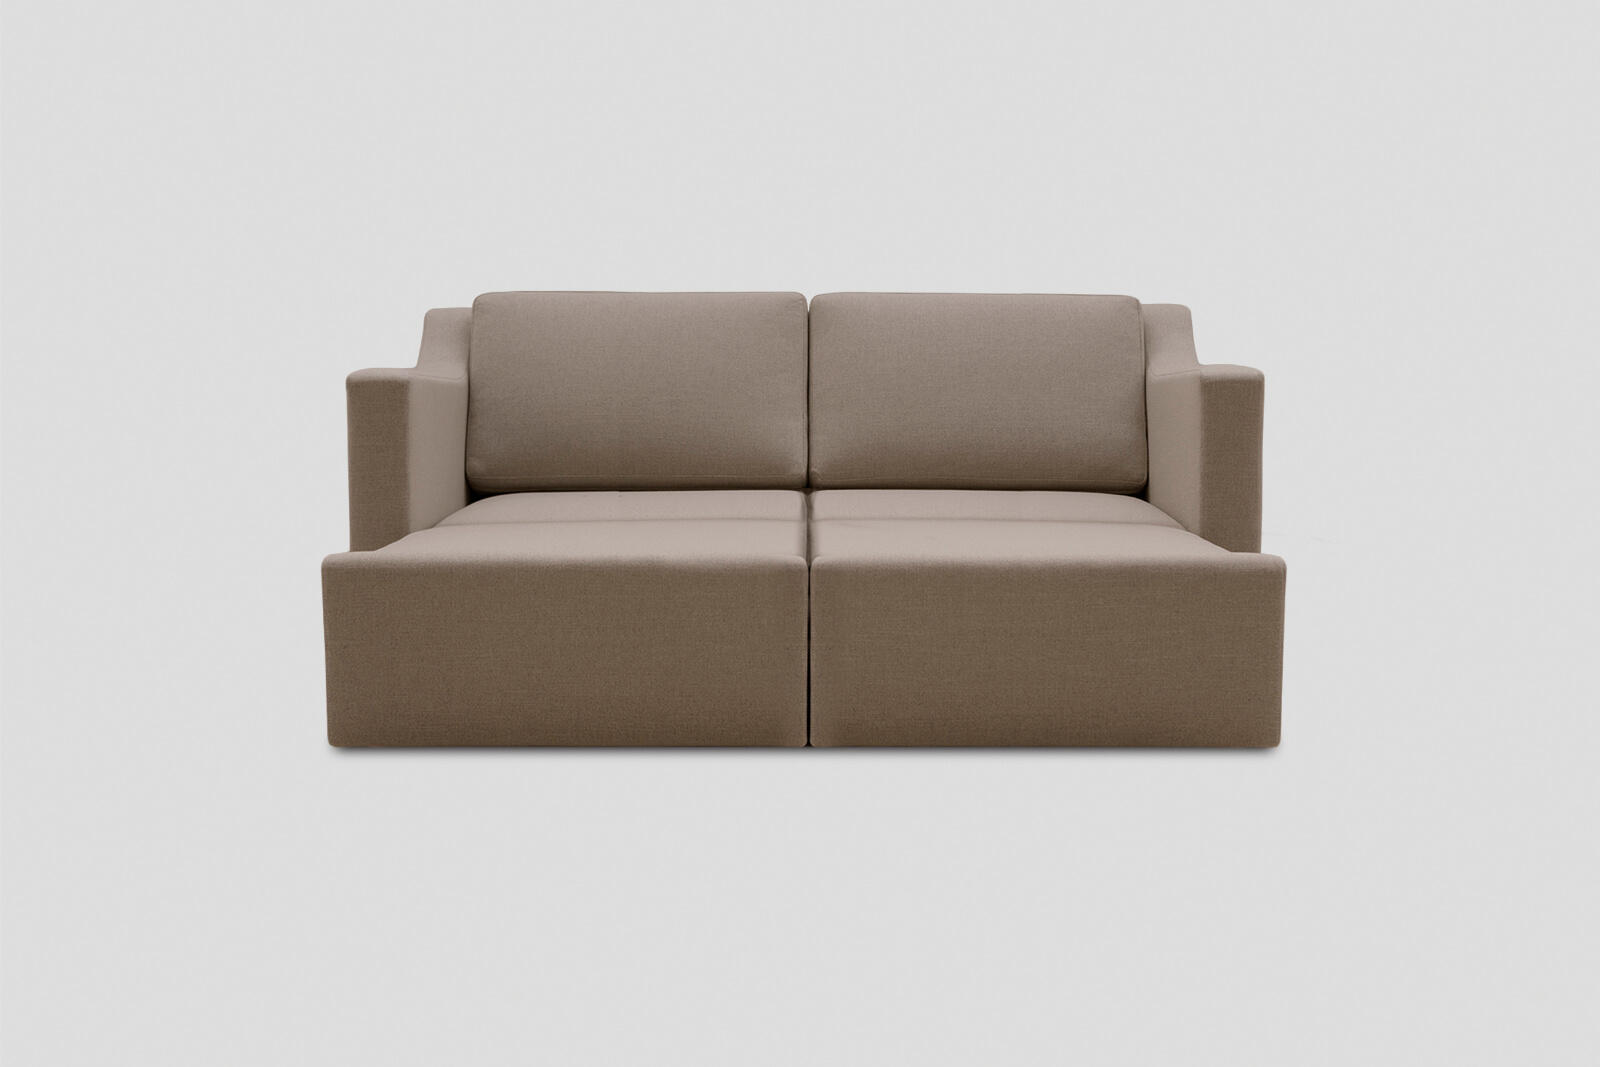 HBSB02-kingsize-sofa-bed-husk-daybed-front